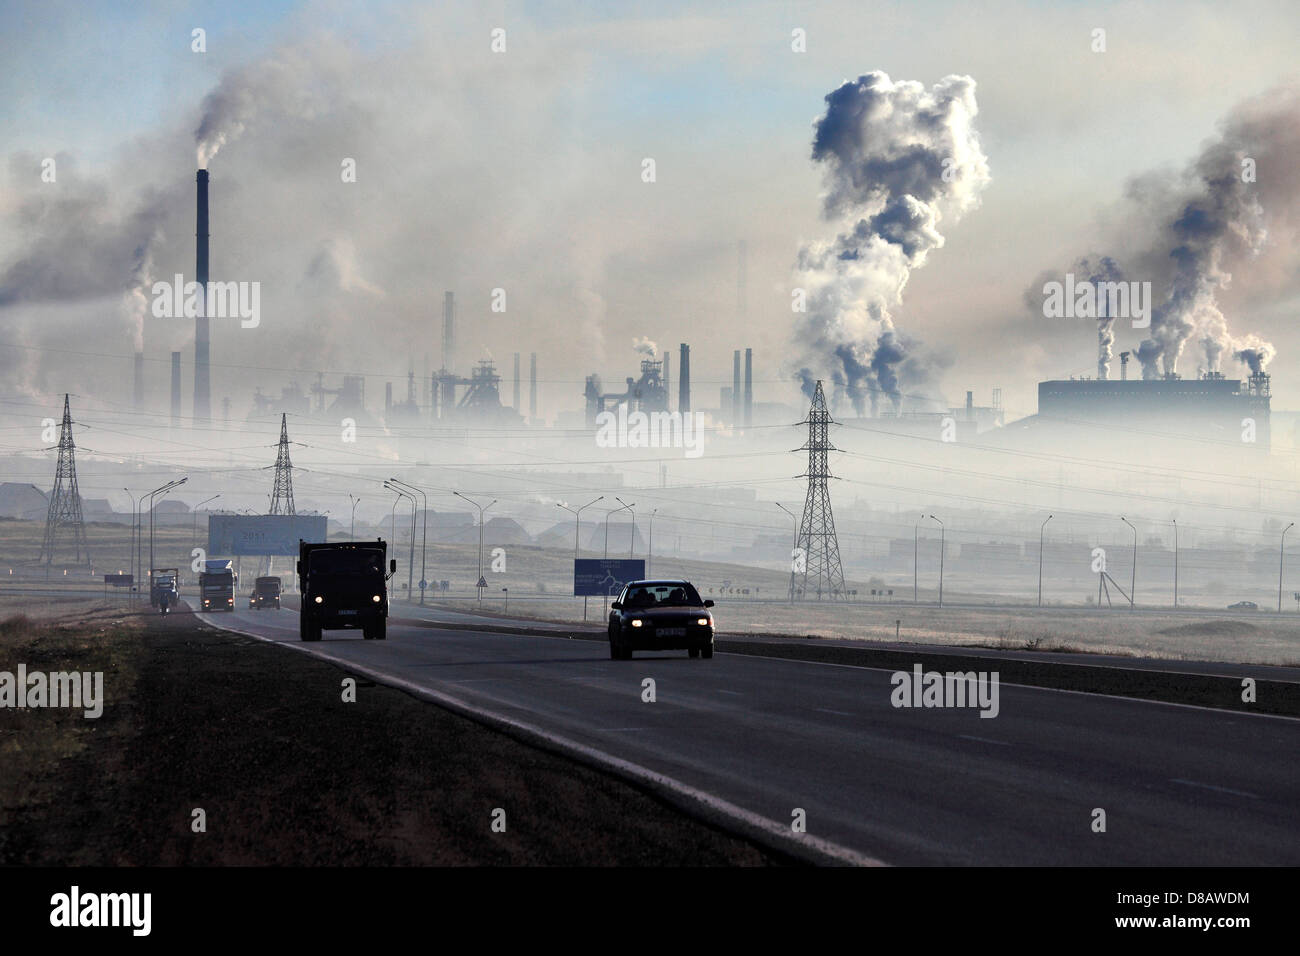 Karaganda - air pollution by steel-works ( Arselor Mittal Temirtau ) Stock Photo